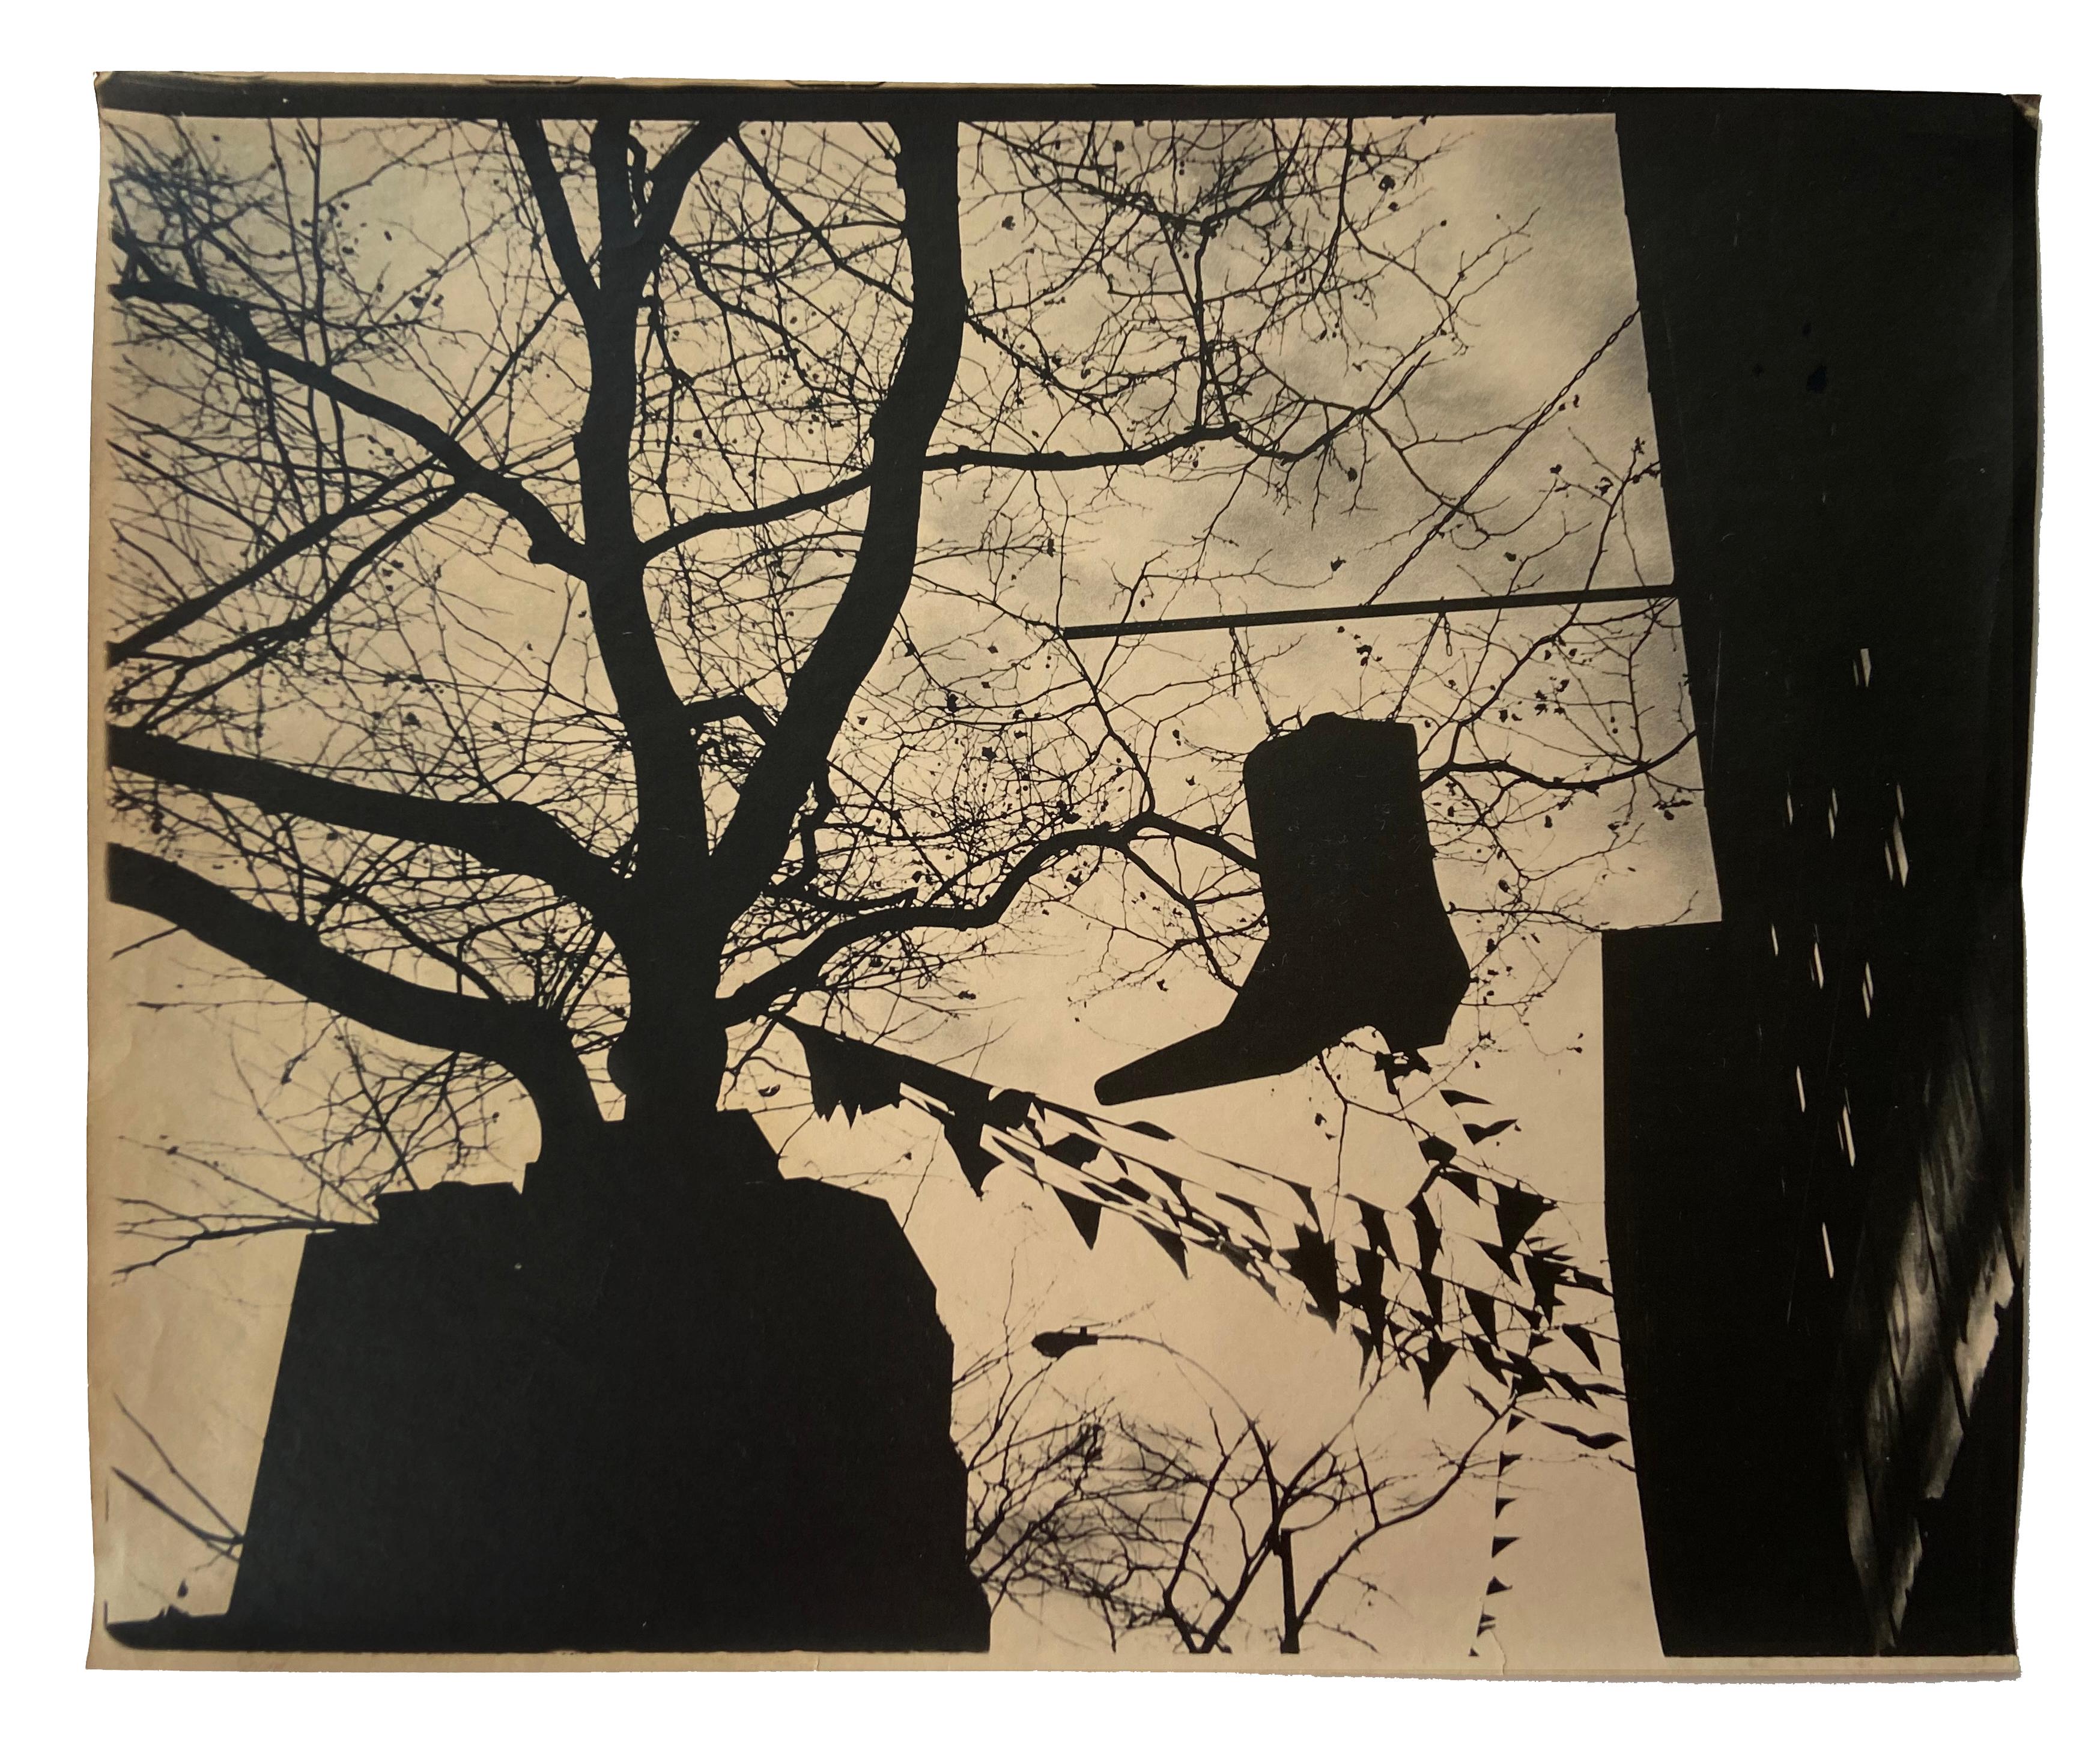 Photographie de la rue de New York 1984 (photographie de Manhattan des années 1980)  - Noir Black and White Photograph par Fernando Natalici